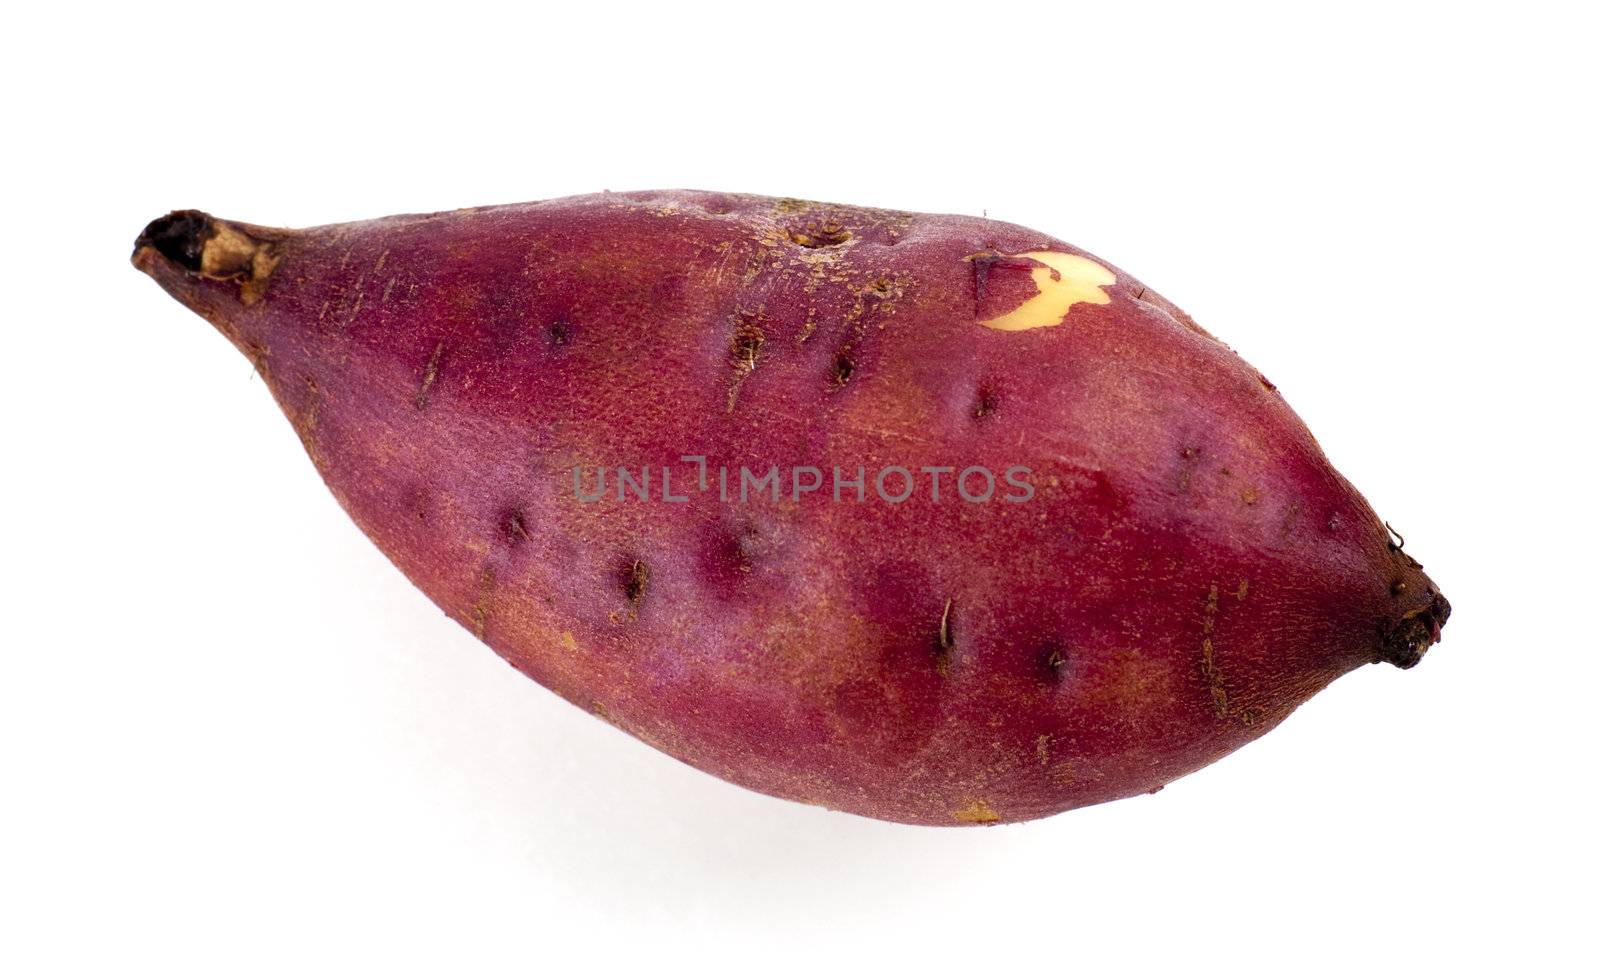 Sweet potatoes by szefei